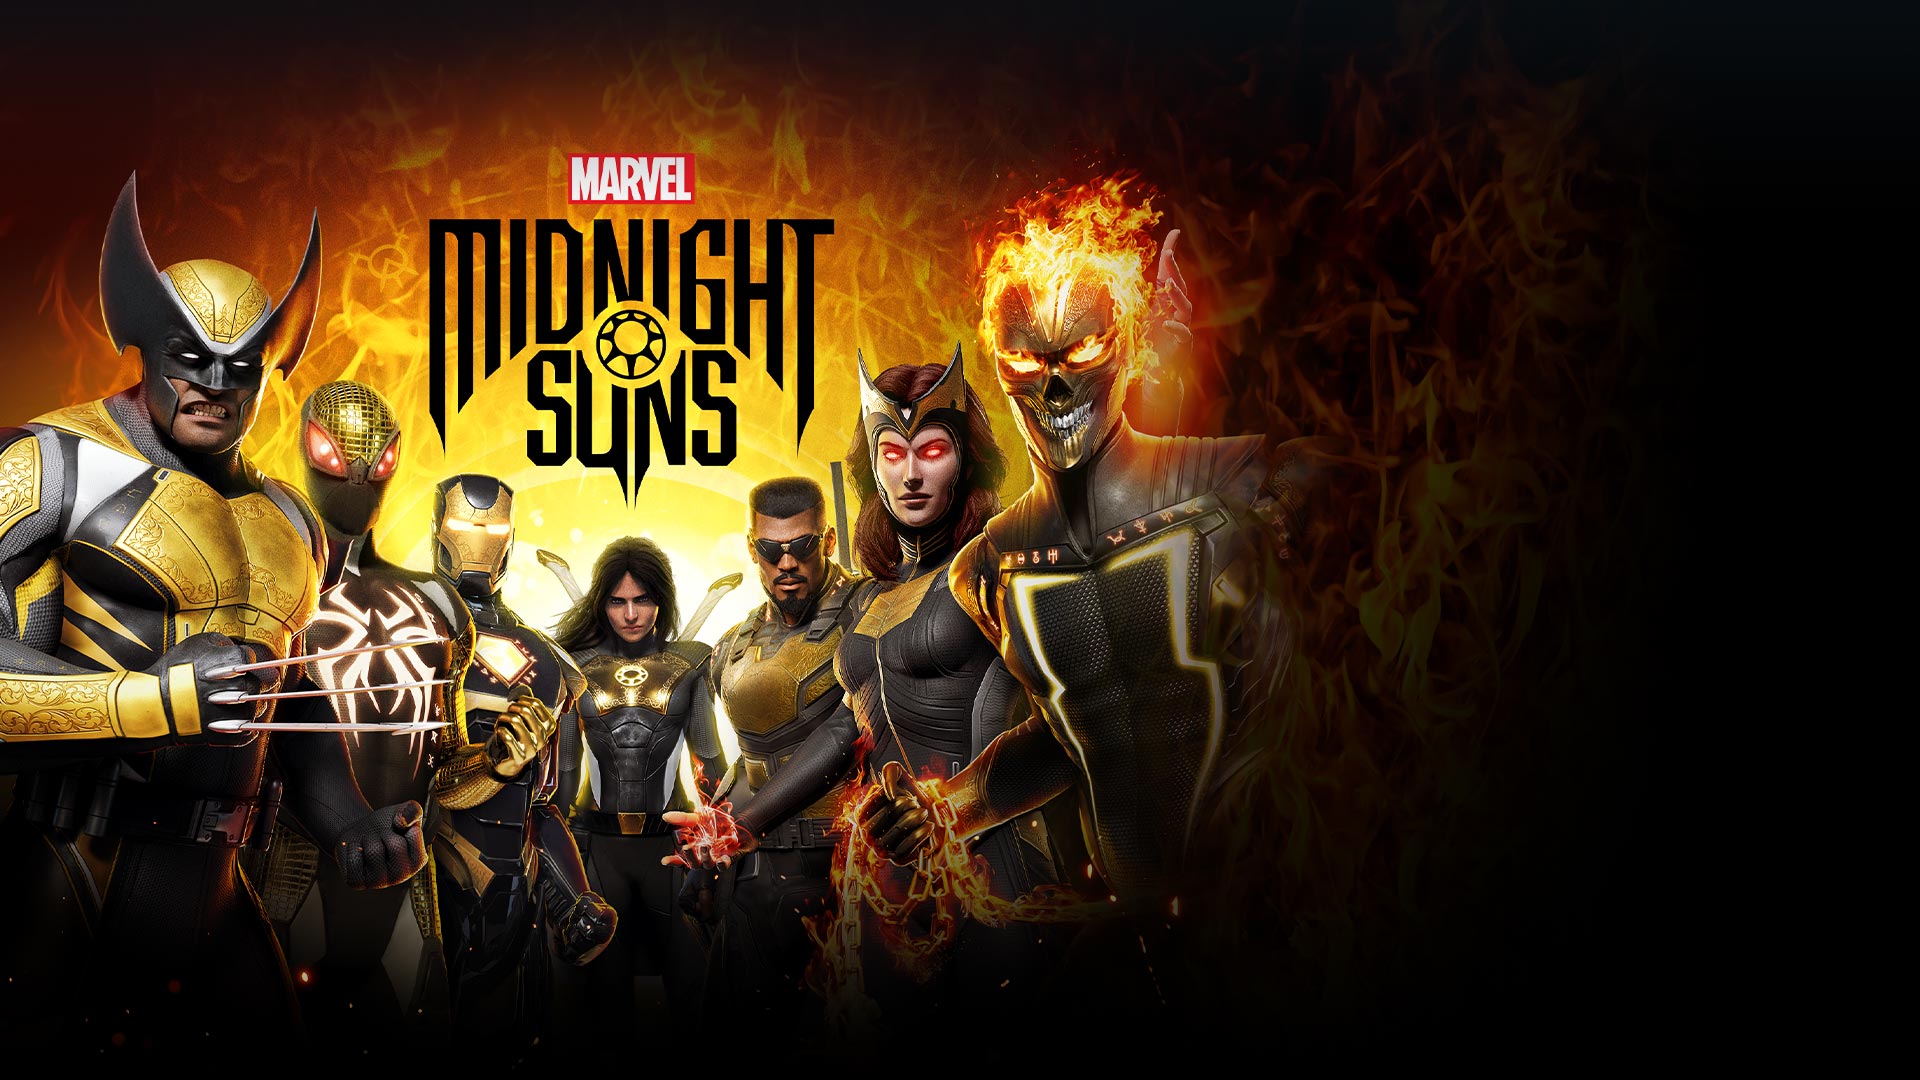 Marvel Midnight Suns, en gruppe superhelter inkludert Wolverine, Ironman, Ghost Rider og Blade.